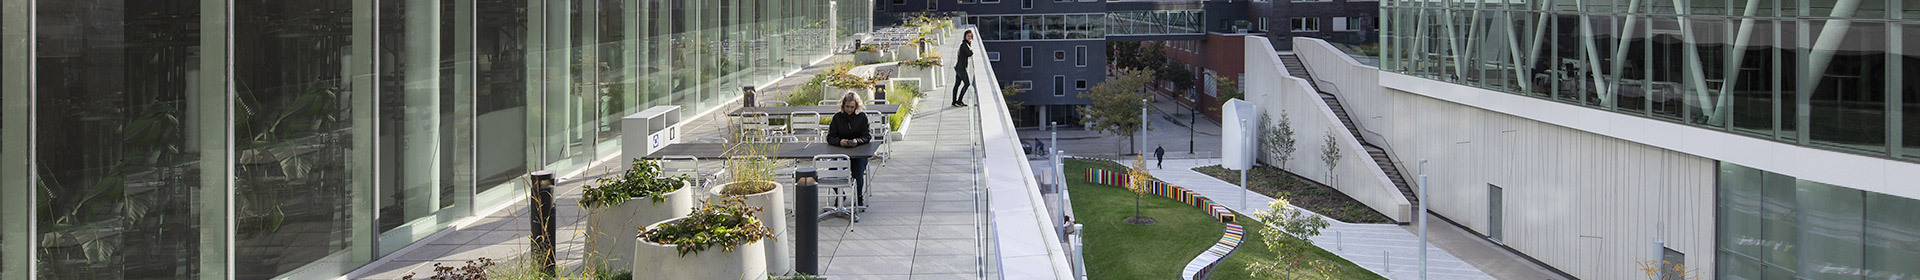 Terrasse verdoyante d'une université avec mobilier moderne pour la détente et l'étude en extérieur.